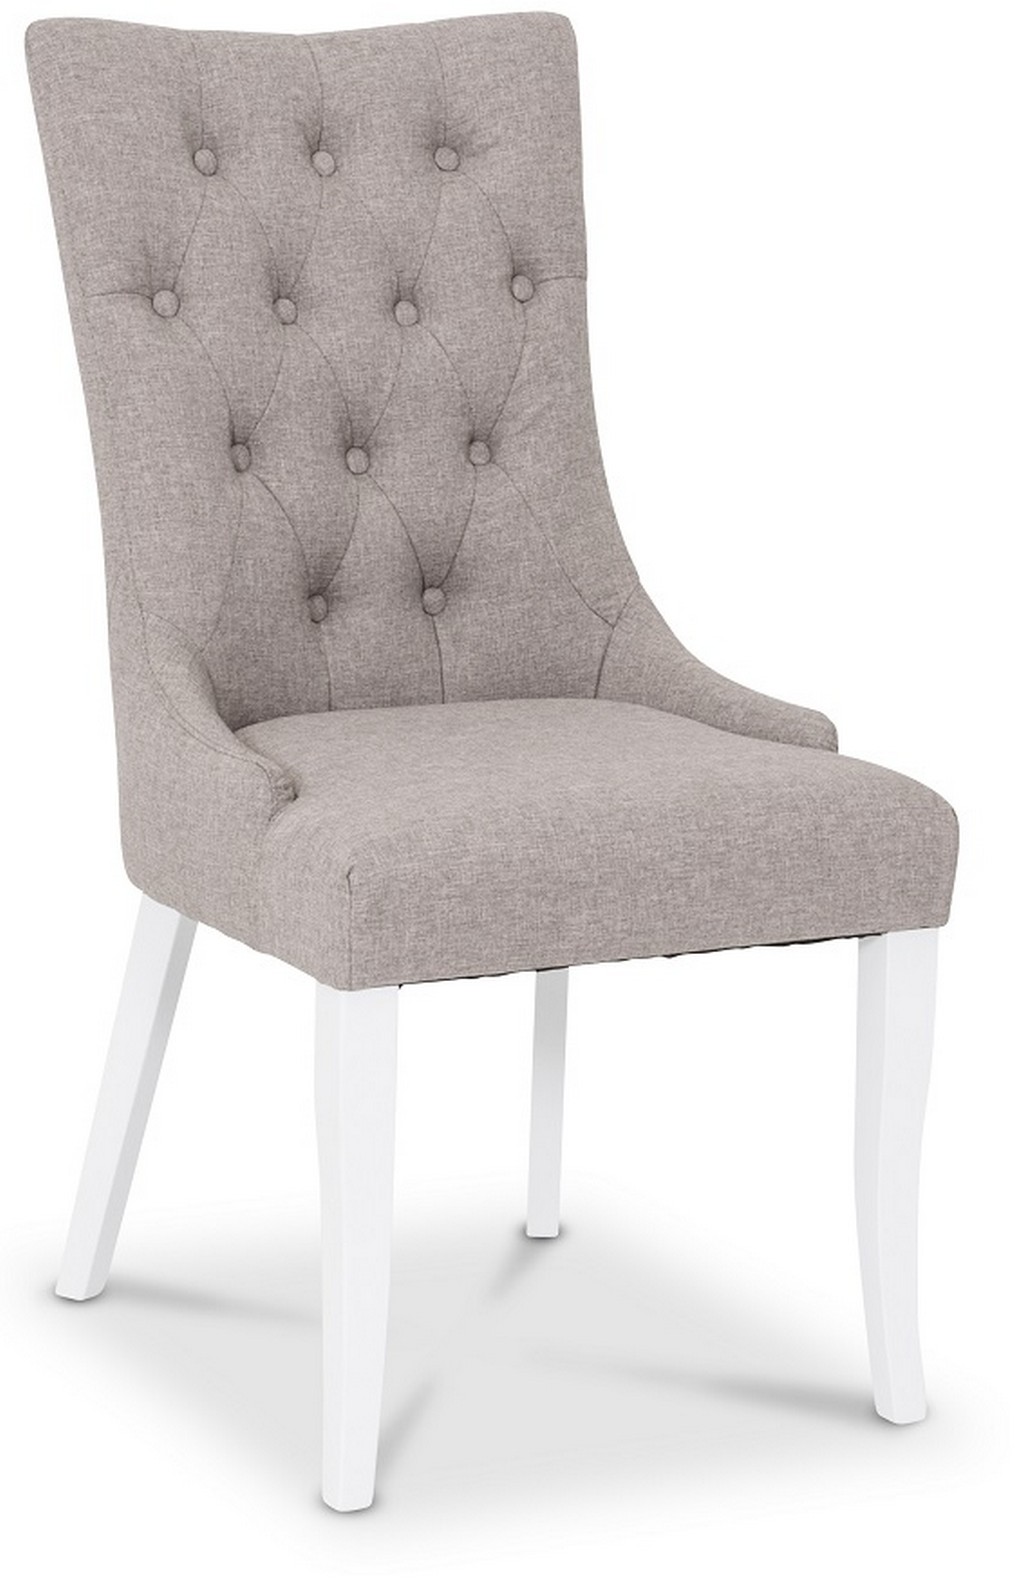 Saga chair, coco fabric